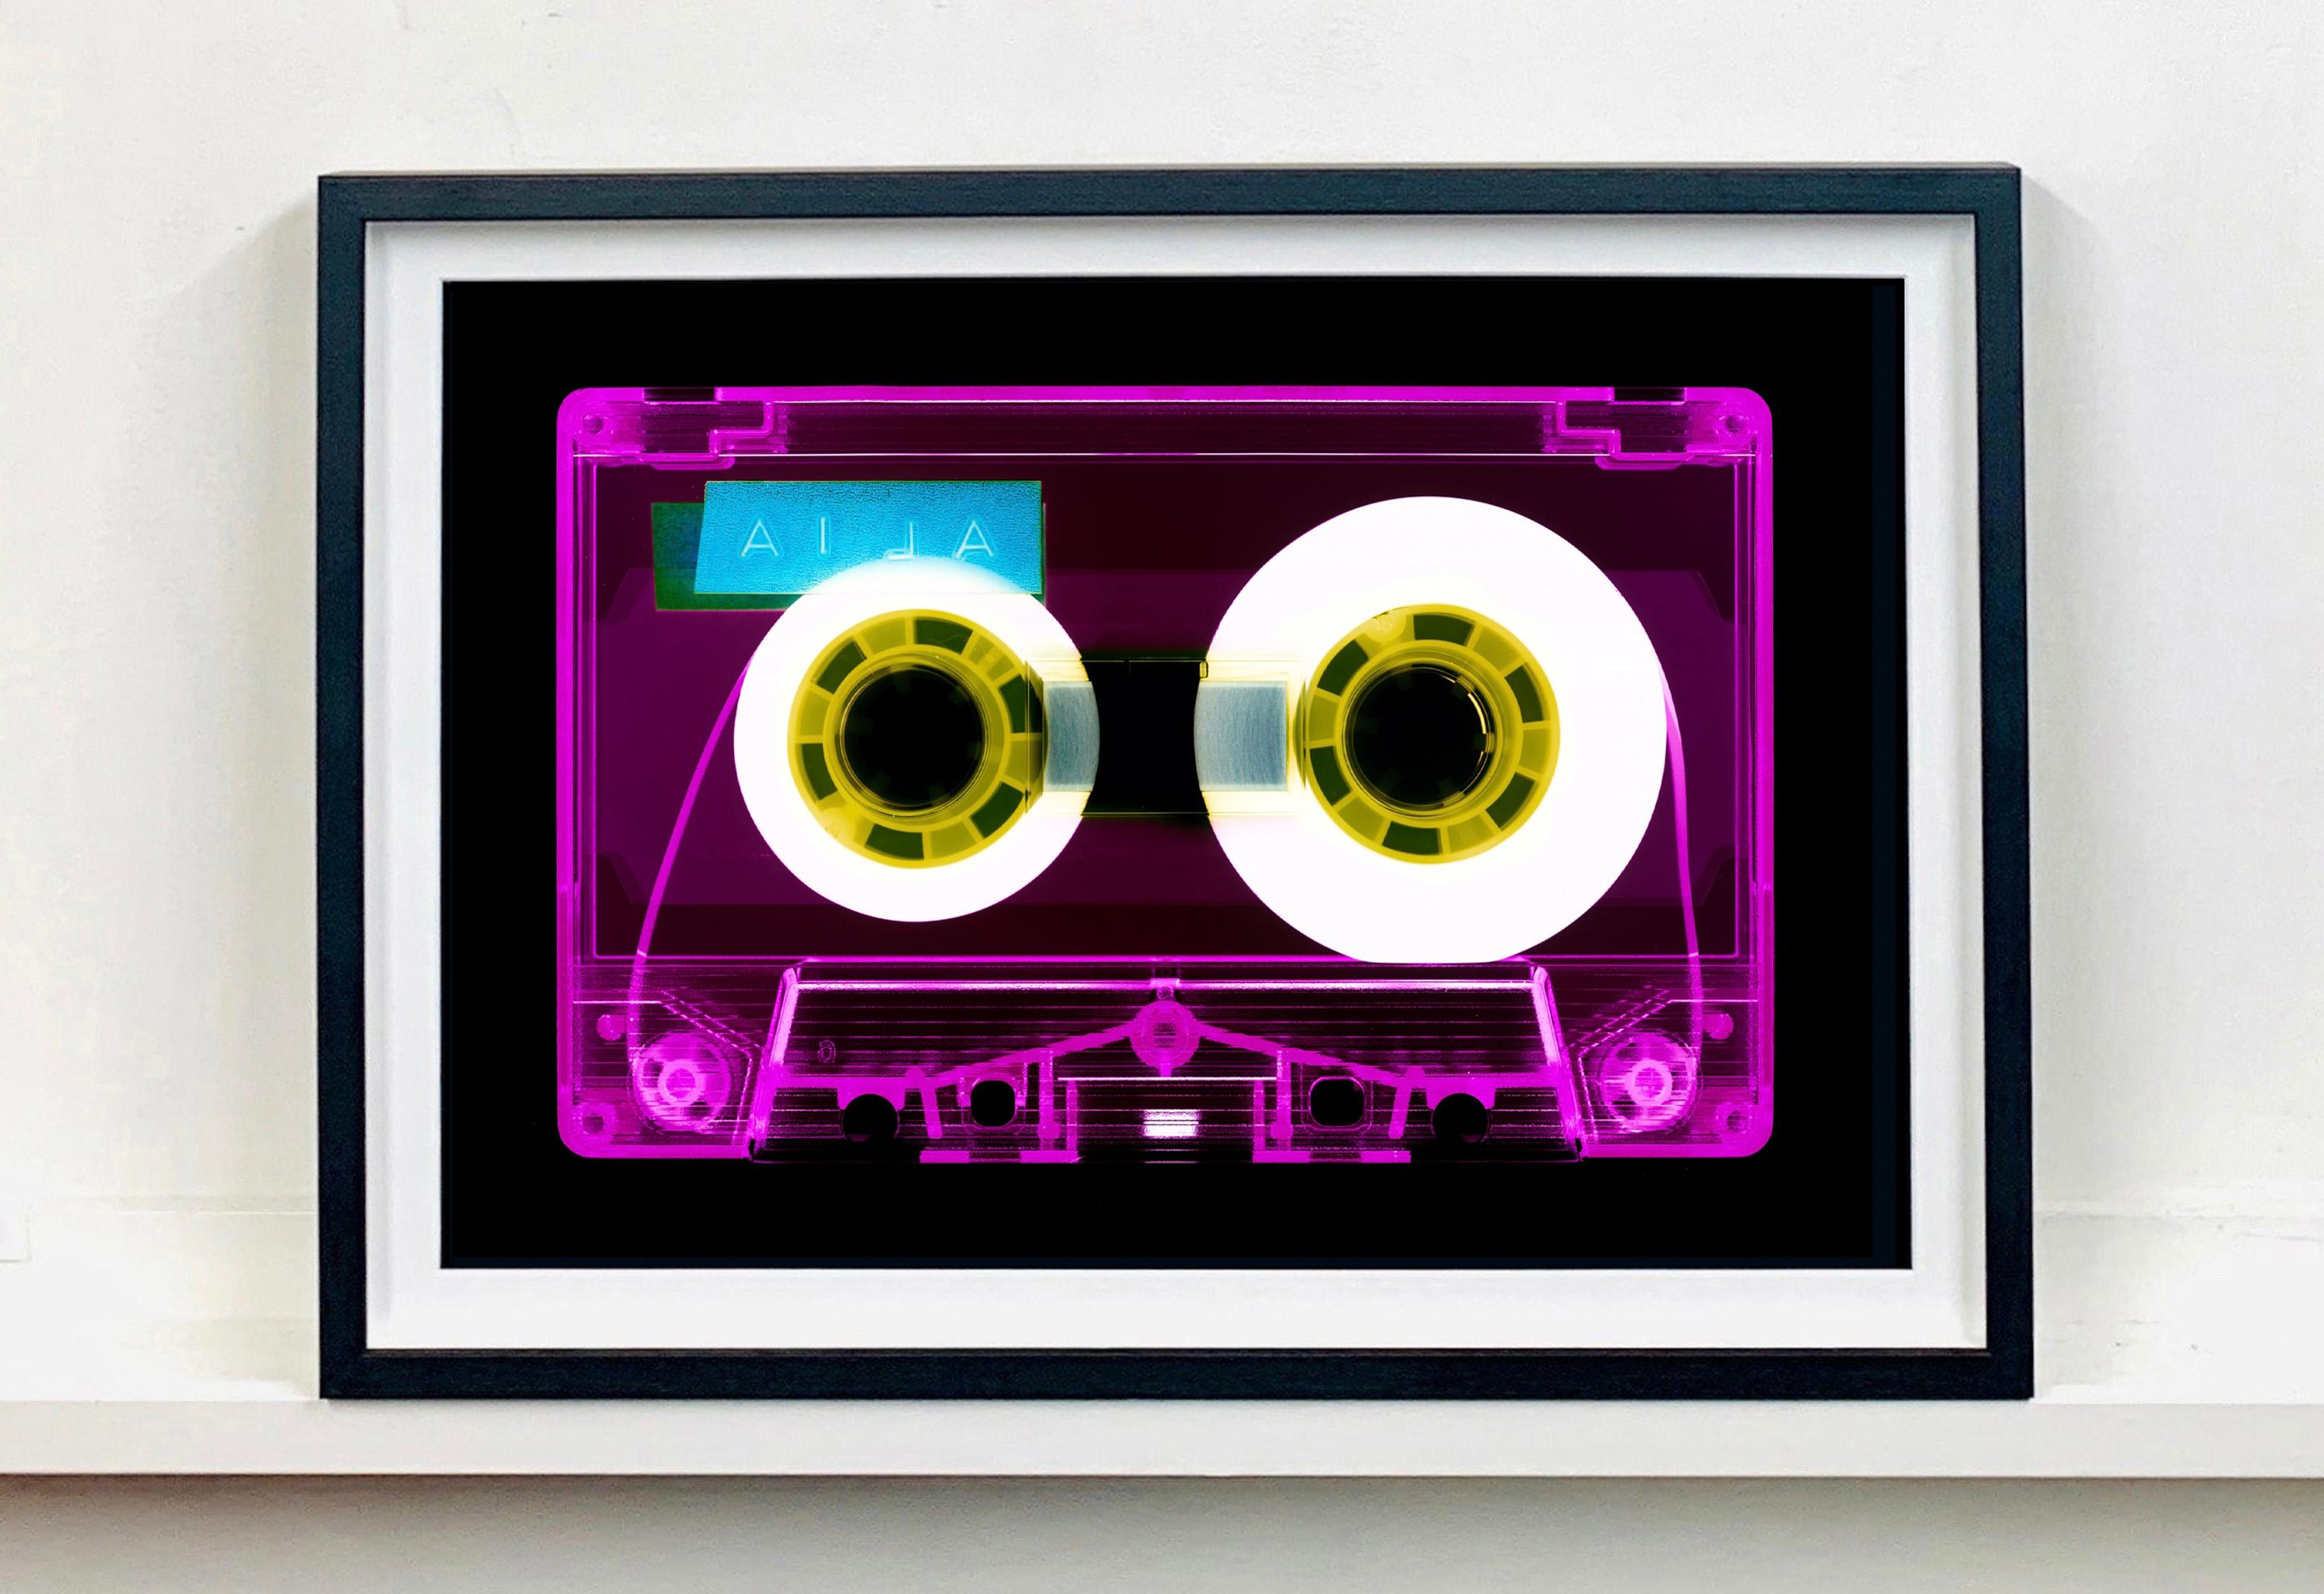 Tape-Kollektion, AILA (Rosa) – Zeitgenössische Pop-Art-Farbfotografie – Print von Heidler & Heeps